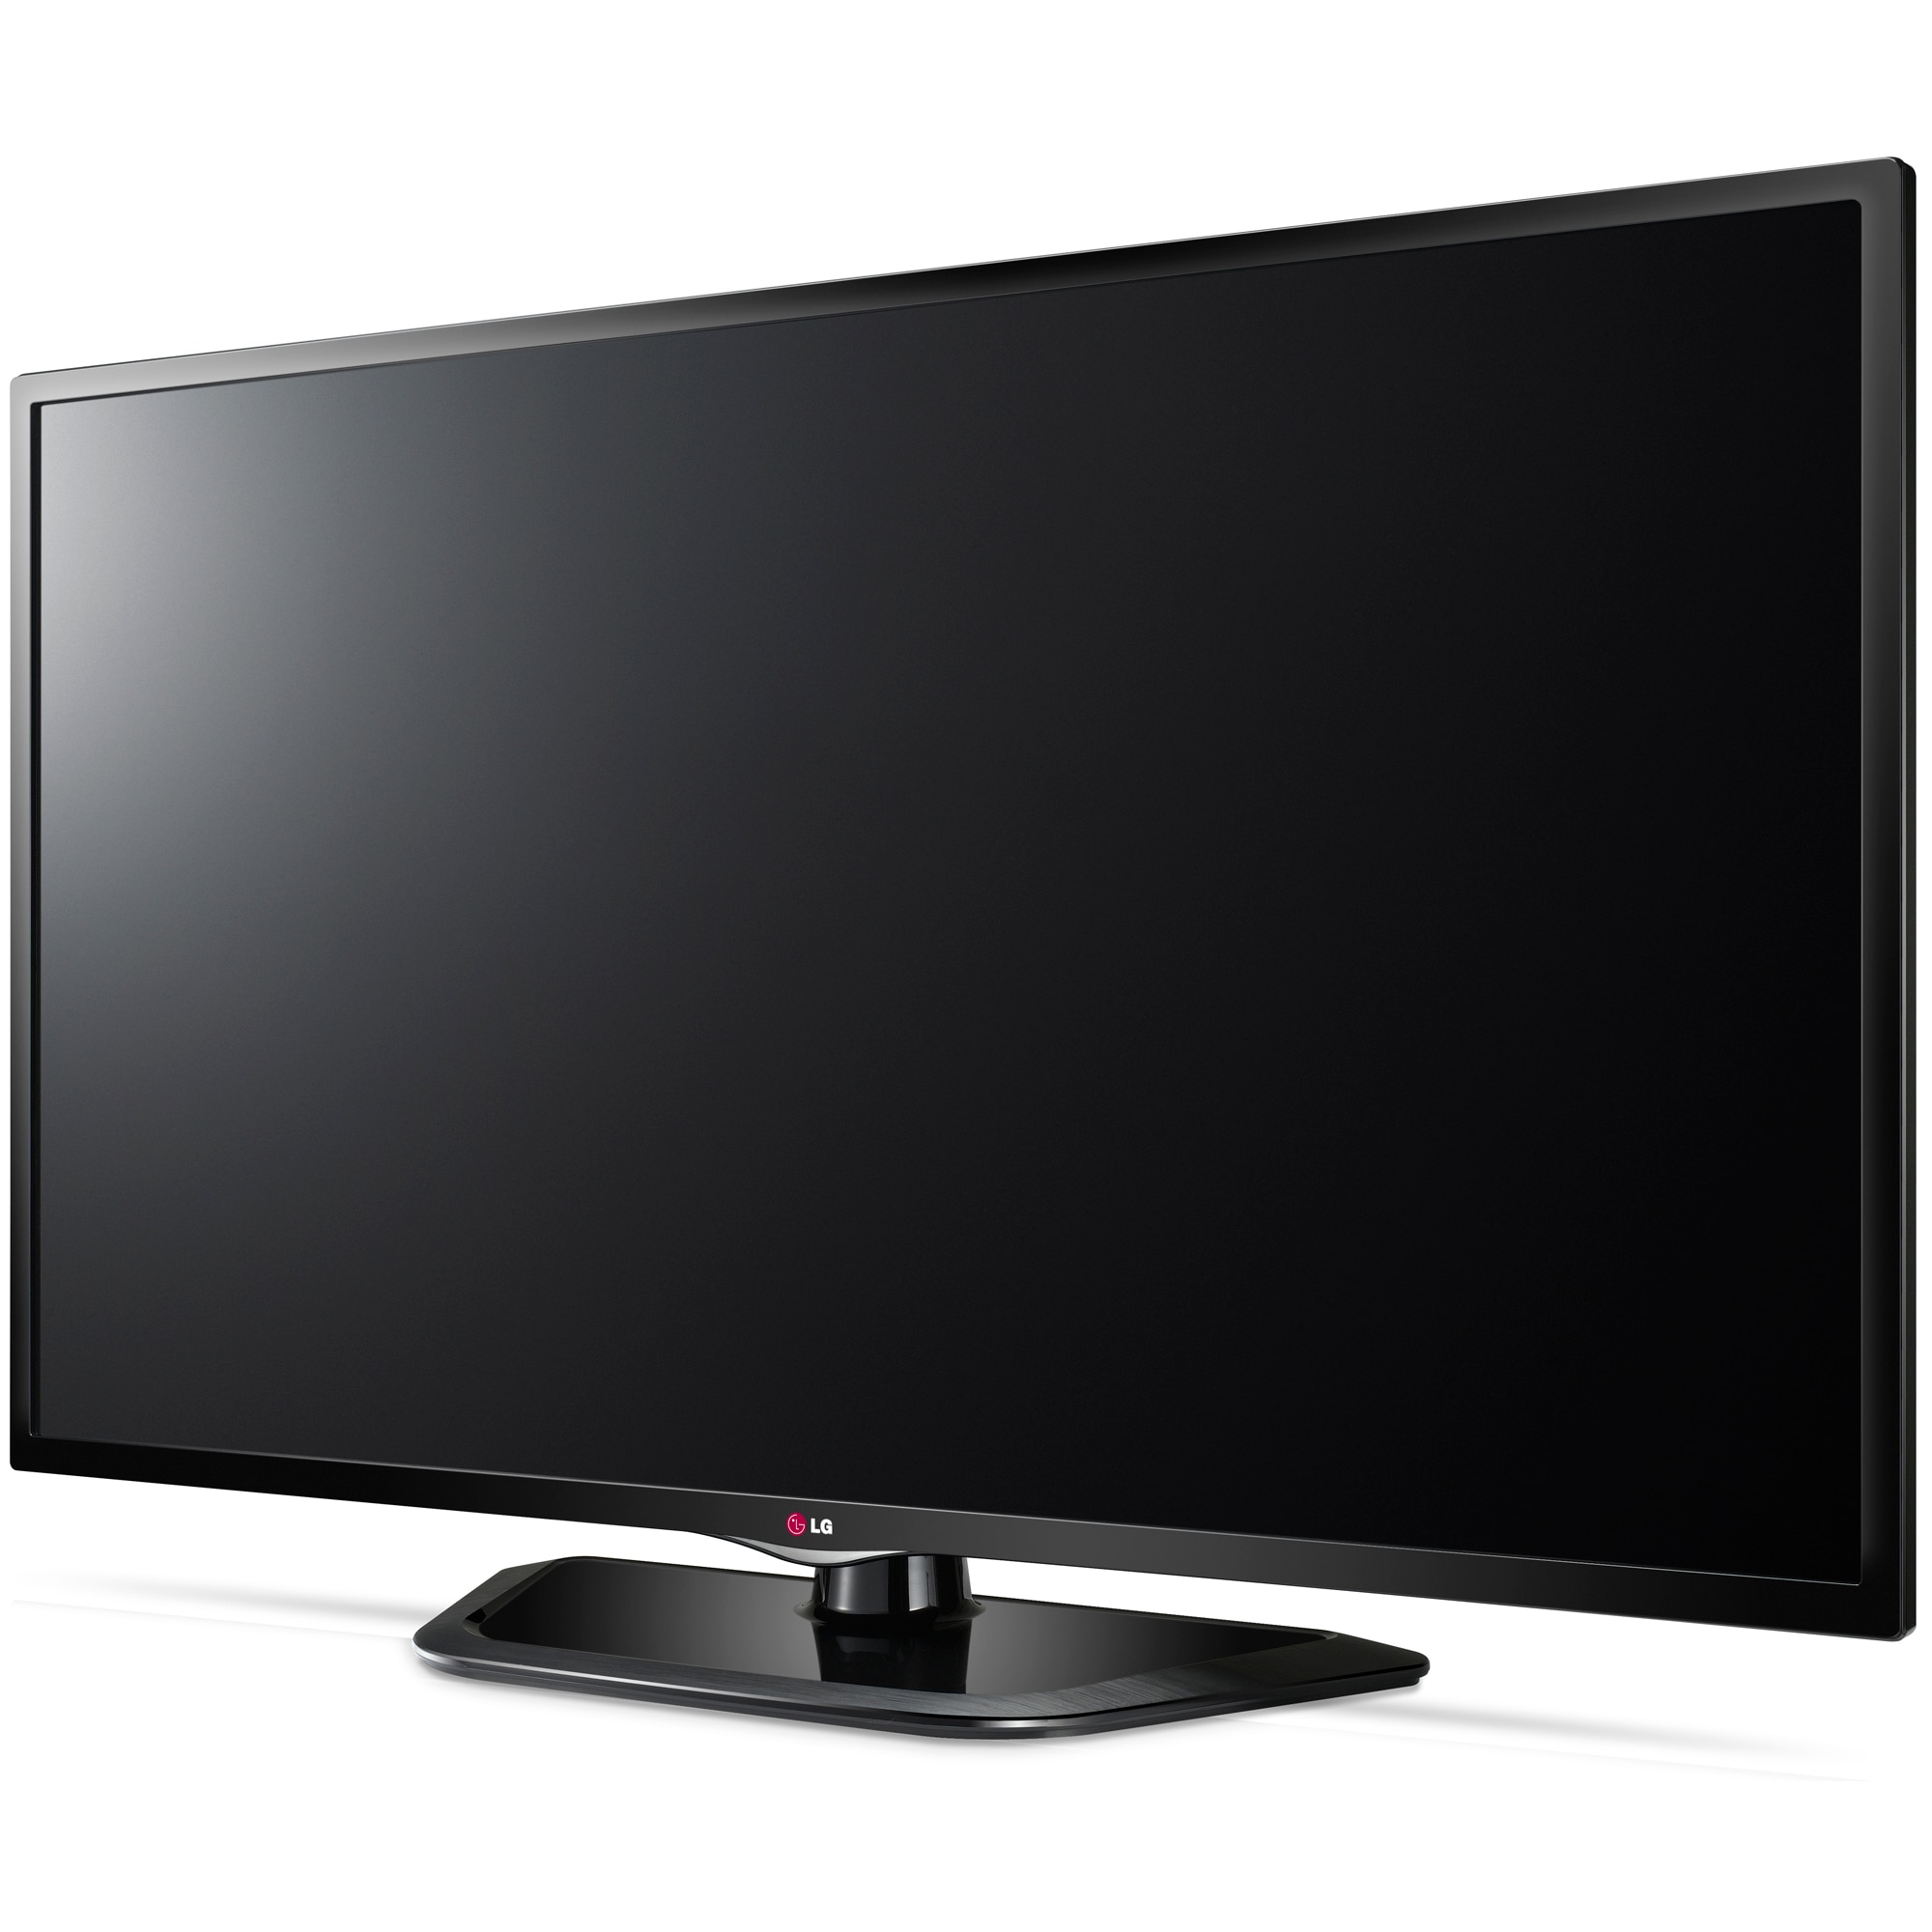 Какие есть телевизоры lg. Телевизор LG 29ln450u. Телевизор LG 32ln541u. LG 32lb530u. Телевизор LG 42ln540v.